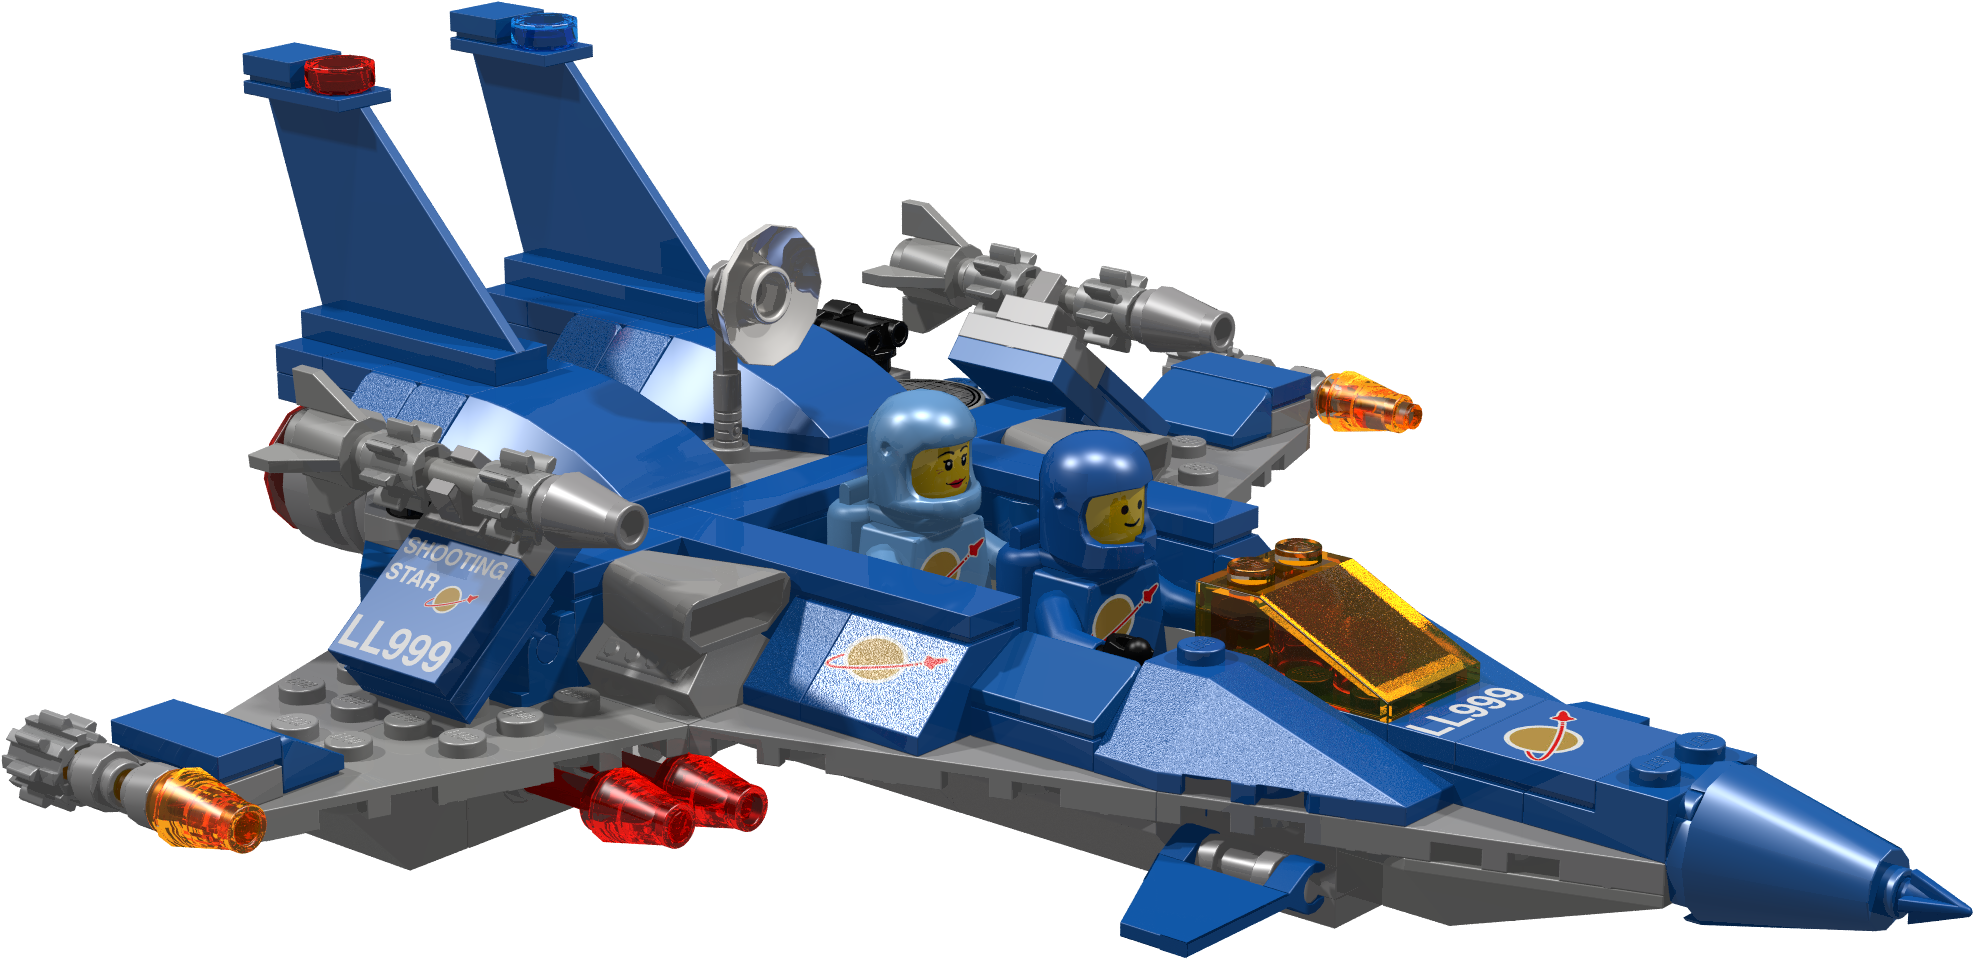 Lego Ideas Toy Lego Space The Lego Group - Lego Modular Spaceship Ideas (2000x1500)